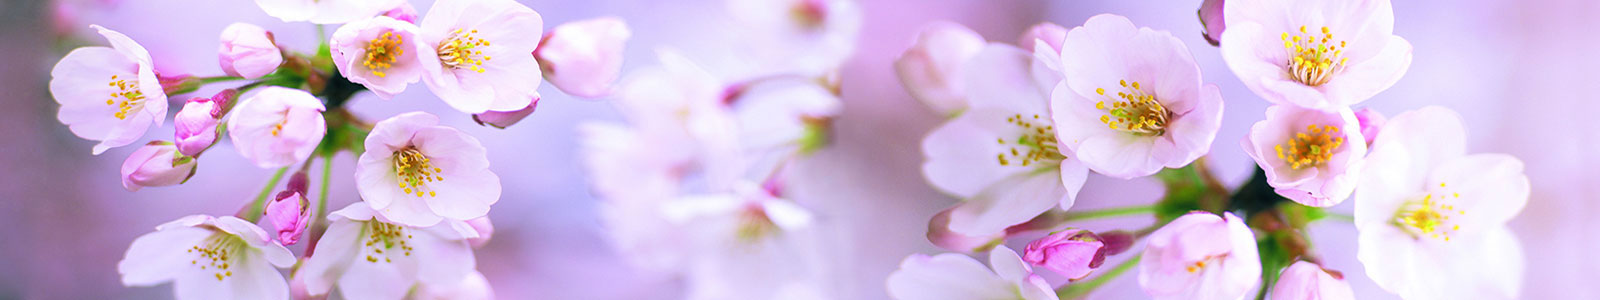 №2074 - Яблоневые цветы на нежно-фиолетовом поле